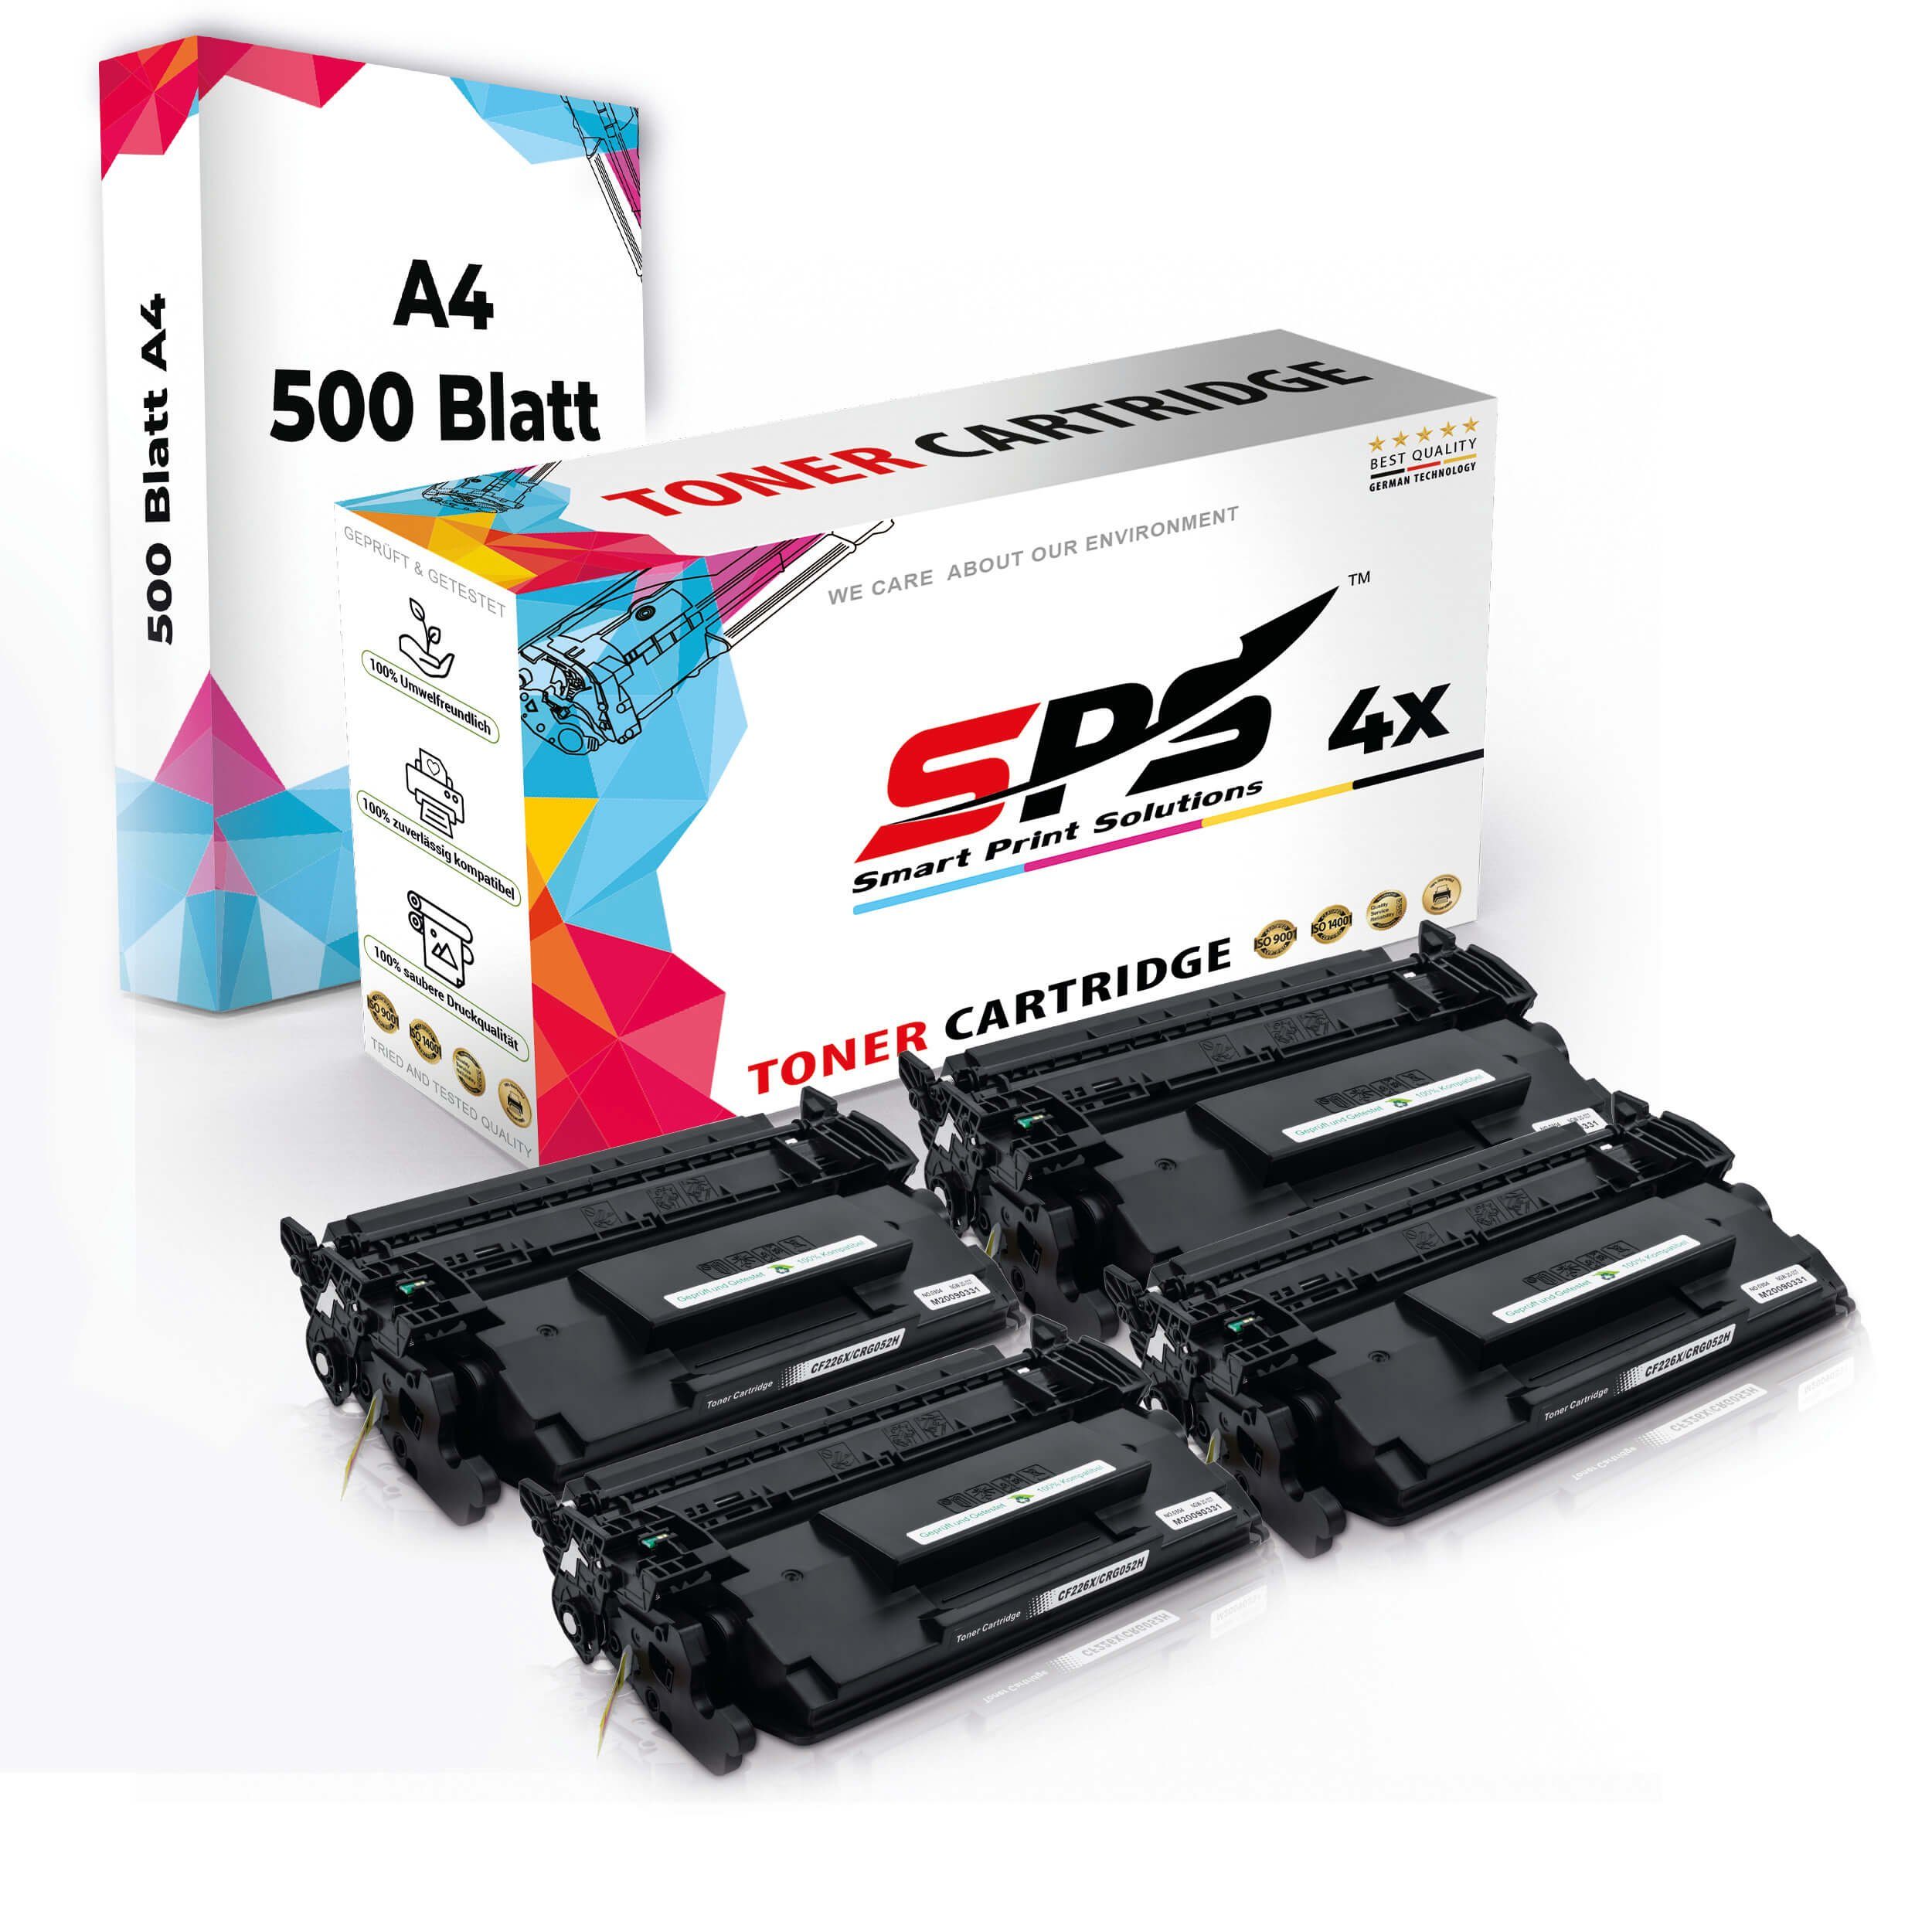 Multipack SPS (5er Set A4 4x Toner,1x Druckerpapier) Kompatibel, A4 Pack, + Tonerkartusche 4x Druckerpapier